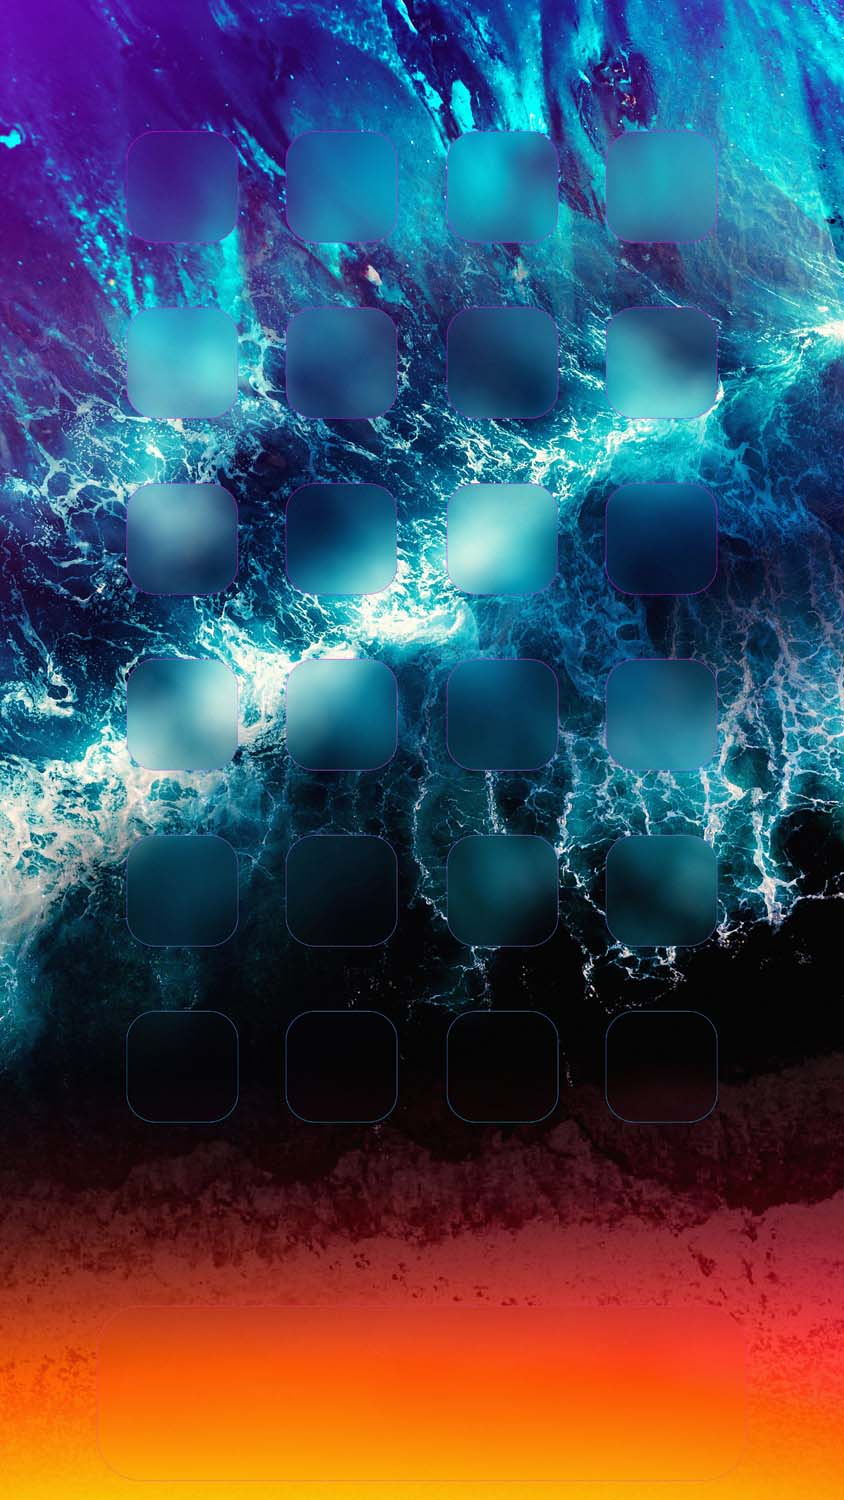 IOS App Dock Ocean IPhone Wallpaper HD 1  IPhone Wallpapers